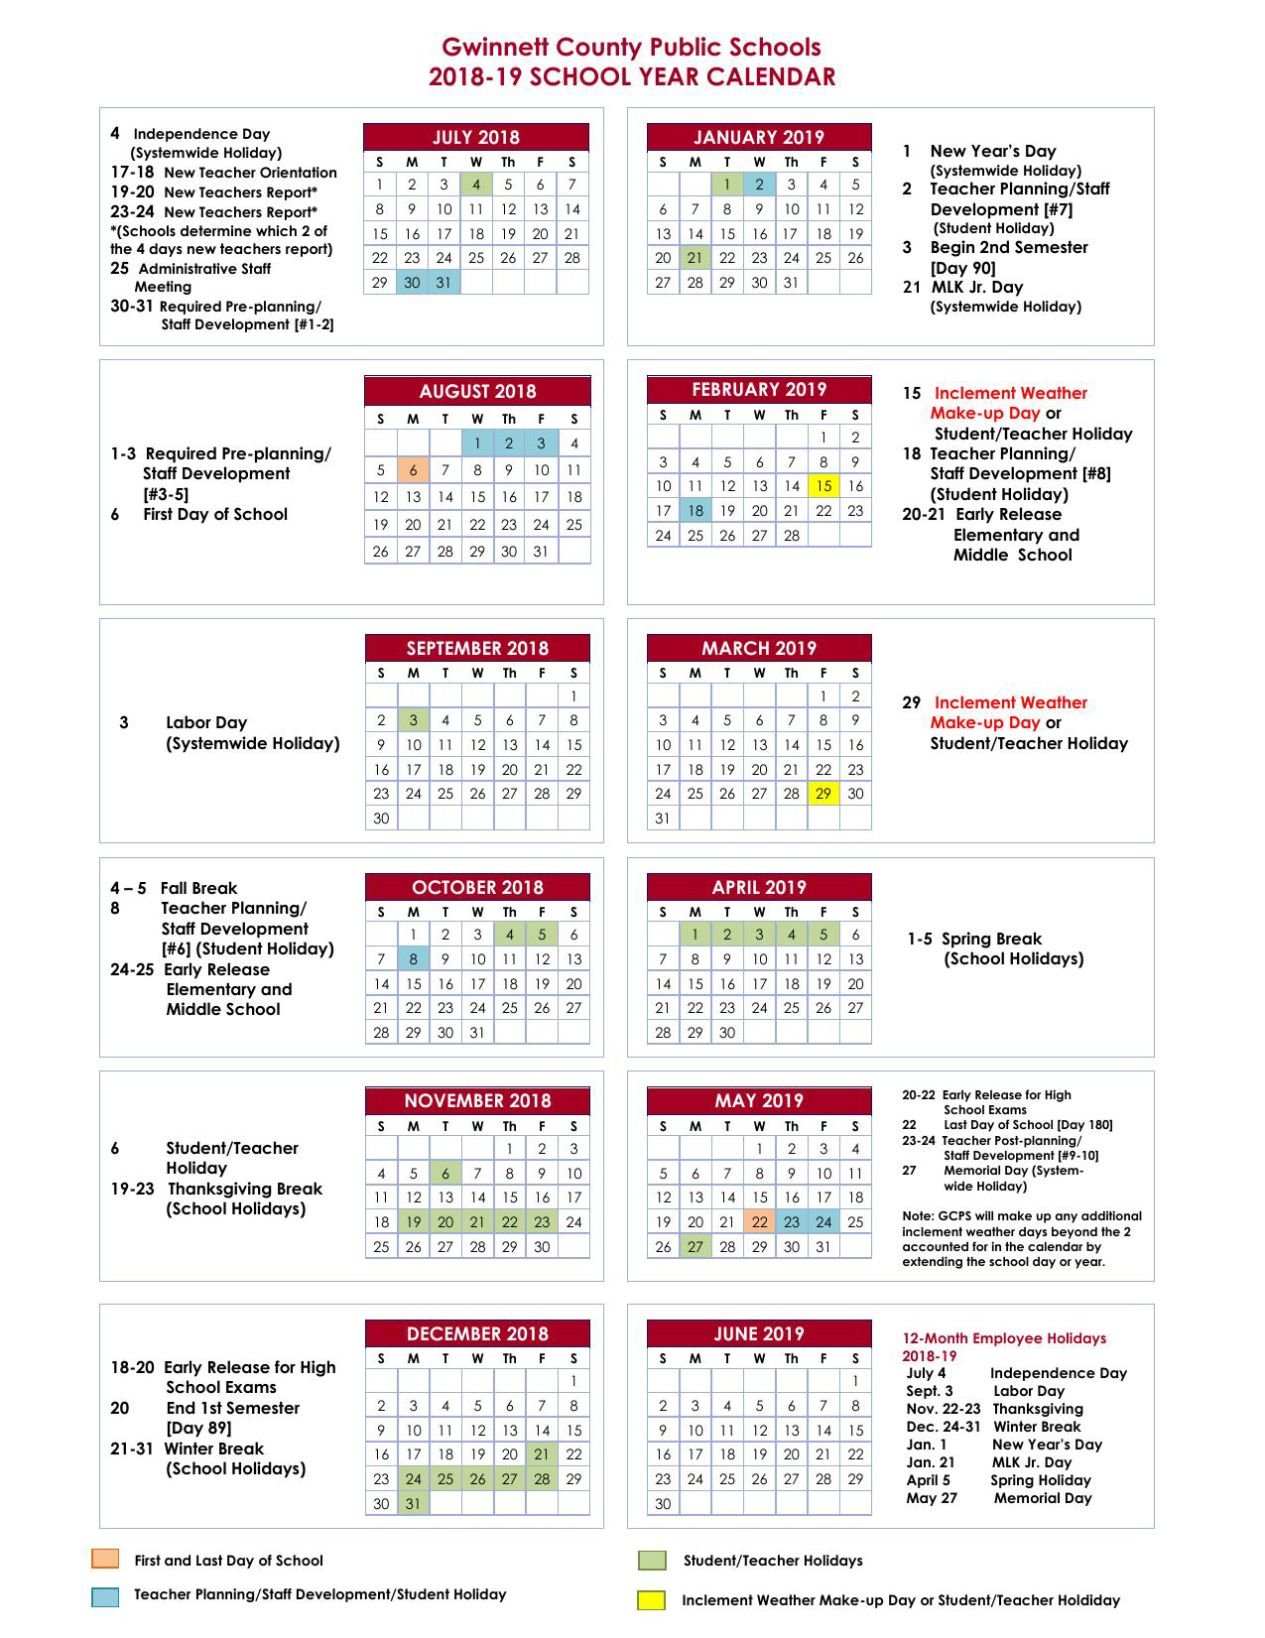 GCPS 2018 19 Calendar gwinnettdailypost com